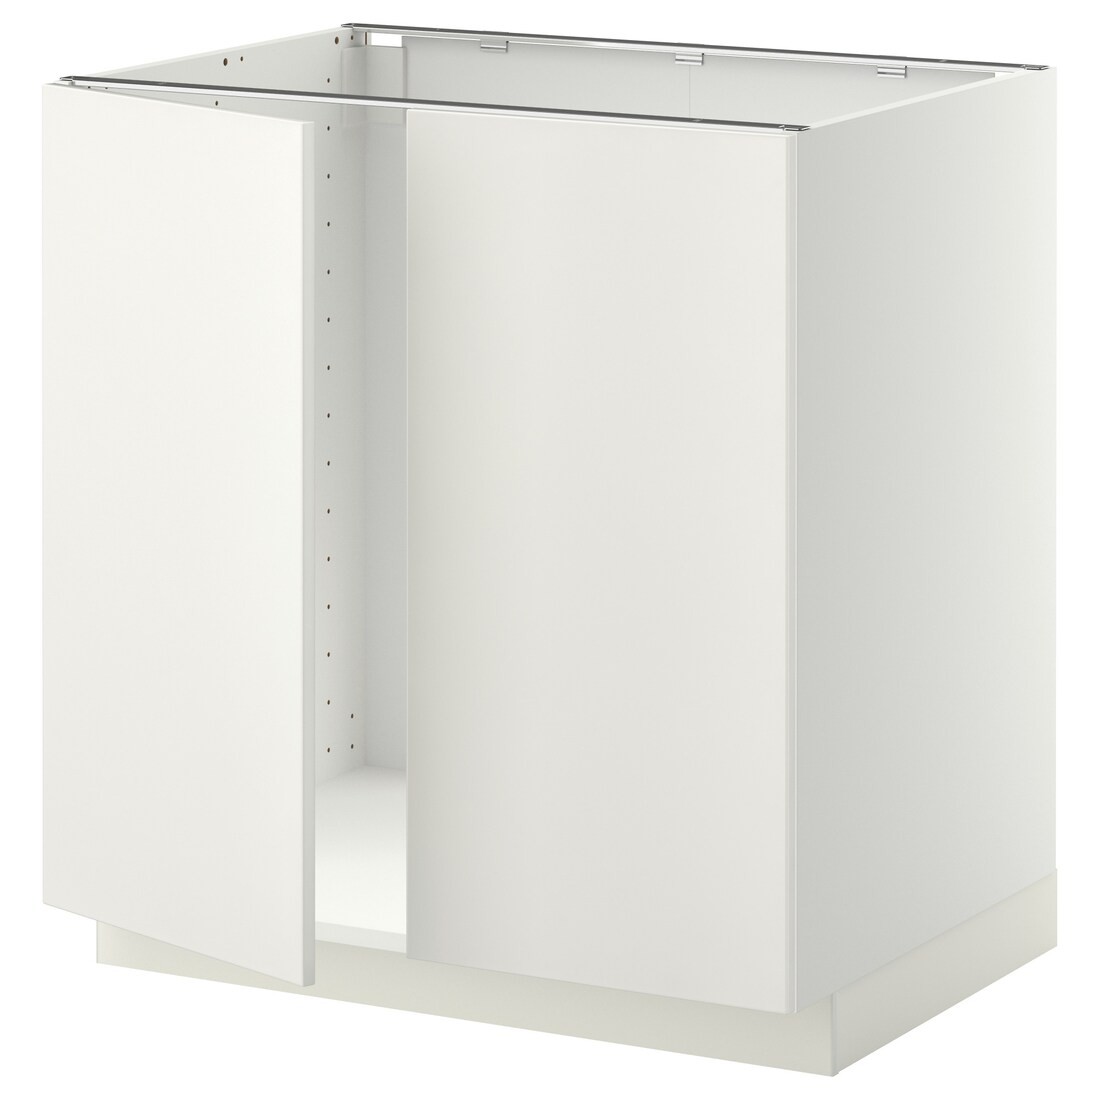 IKEA METOD МЕТОД Напольный шкаф для мойки, белый / Veddinge белый, 80x60 см 99456430 994.564.30